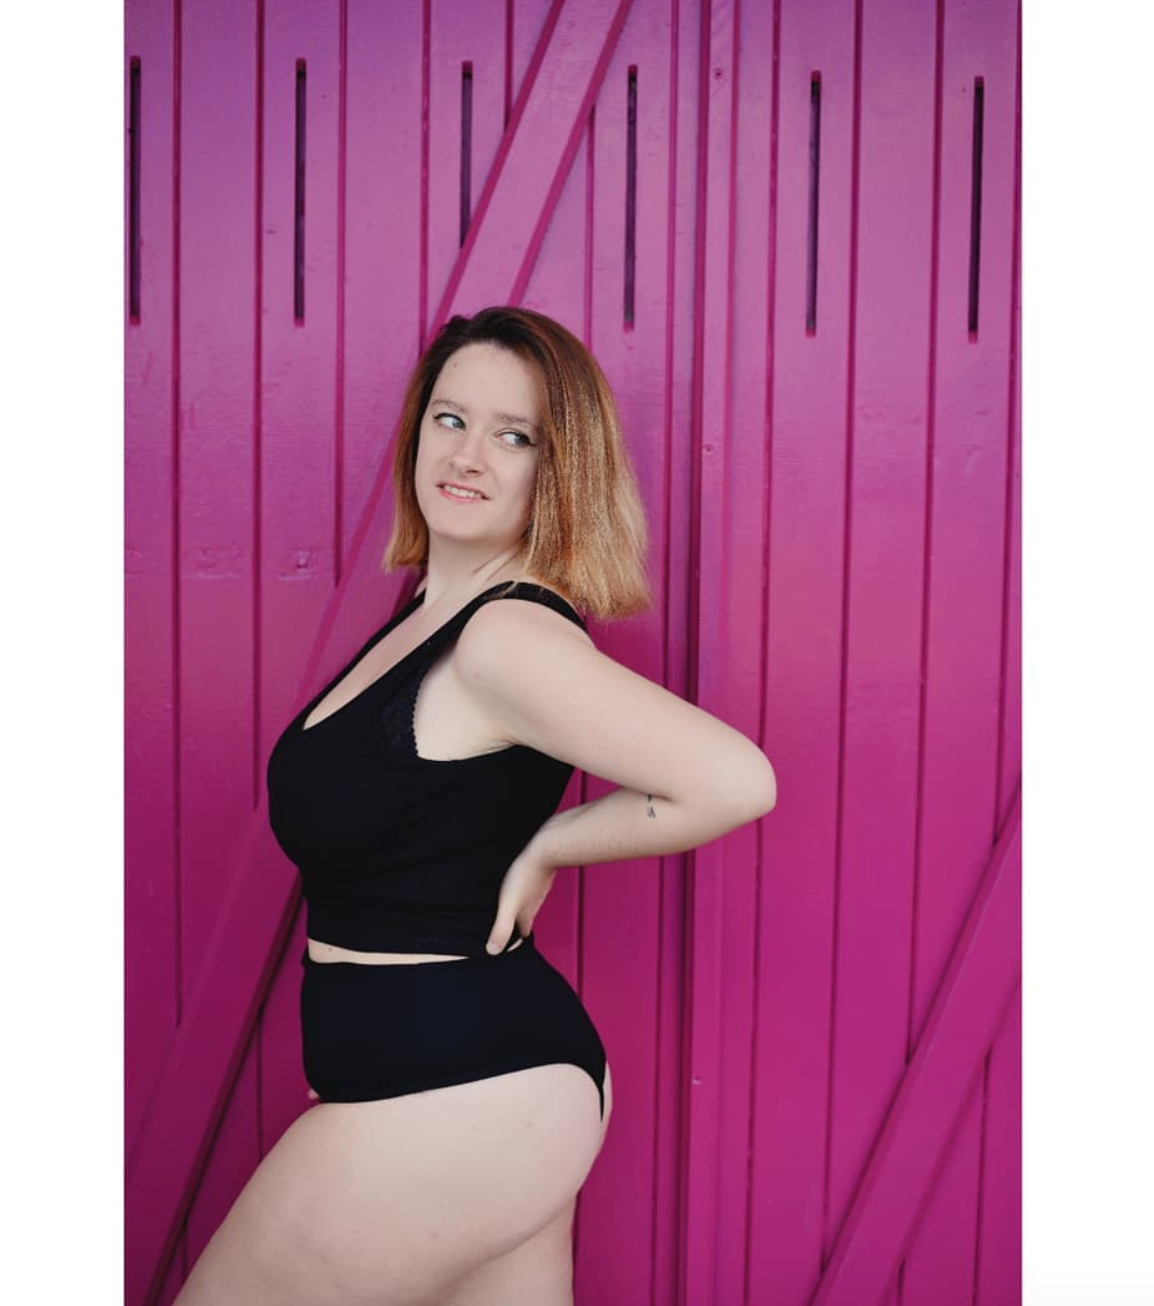 photo sur fond rose de l'influenceuse bodypositive @elenacurvymodel portant un top noir et une culotte muse underwear noire de profil